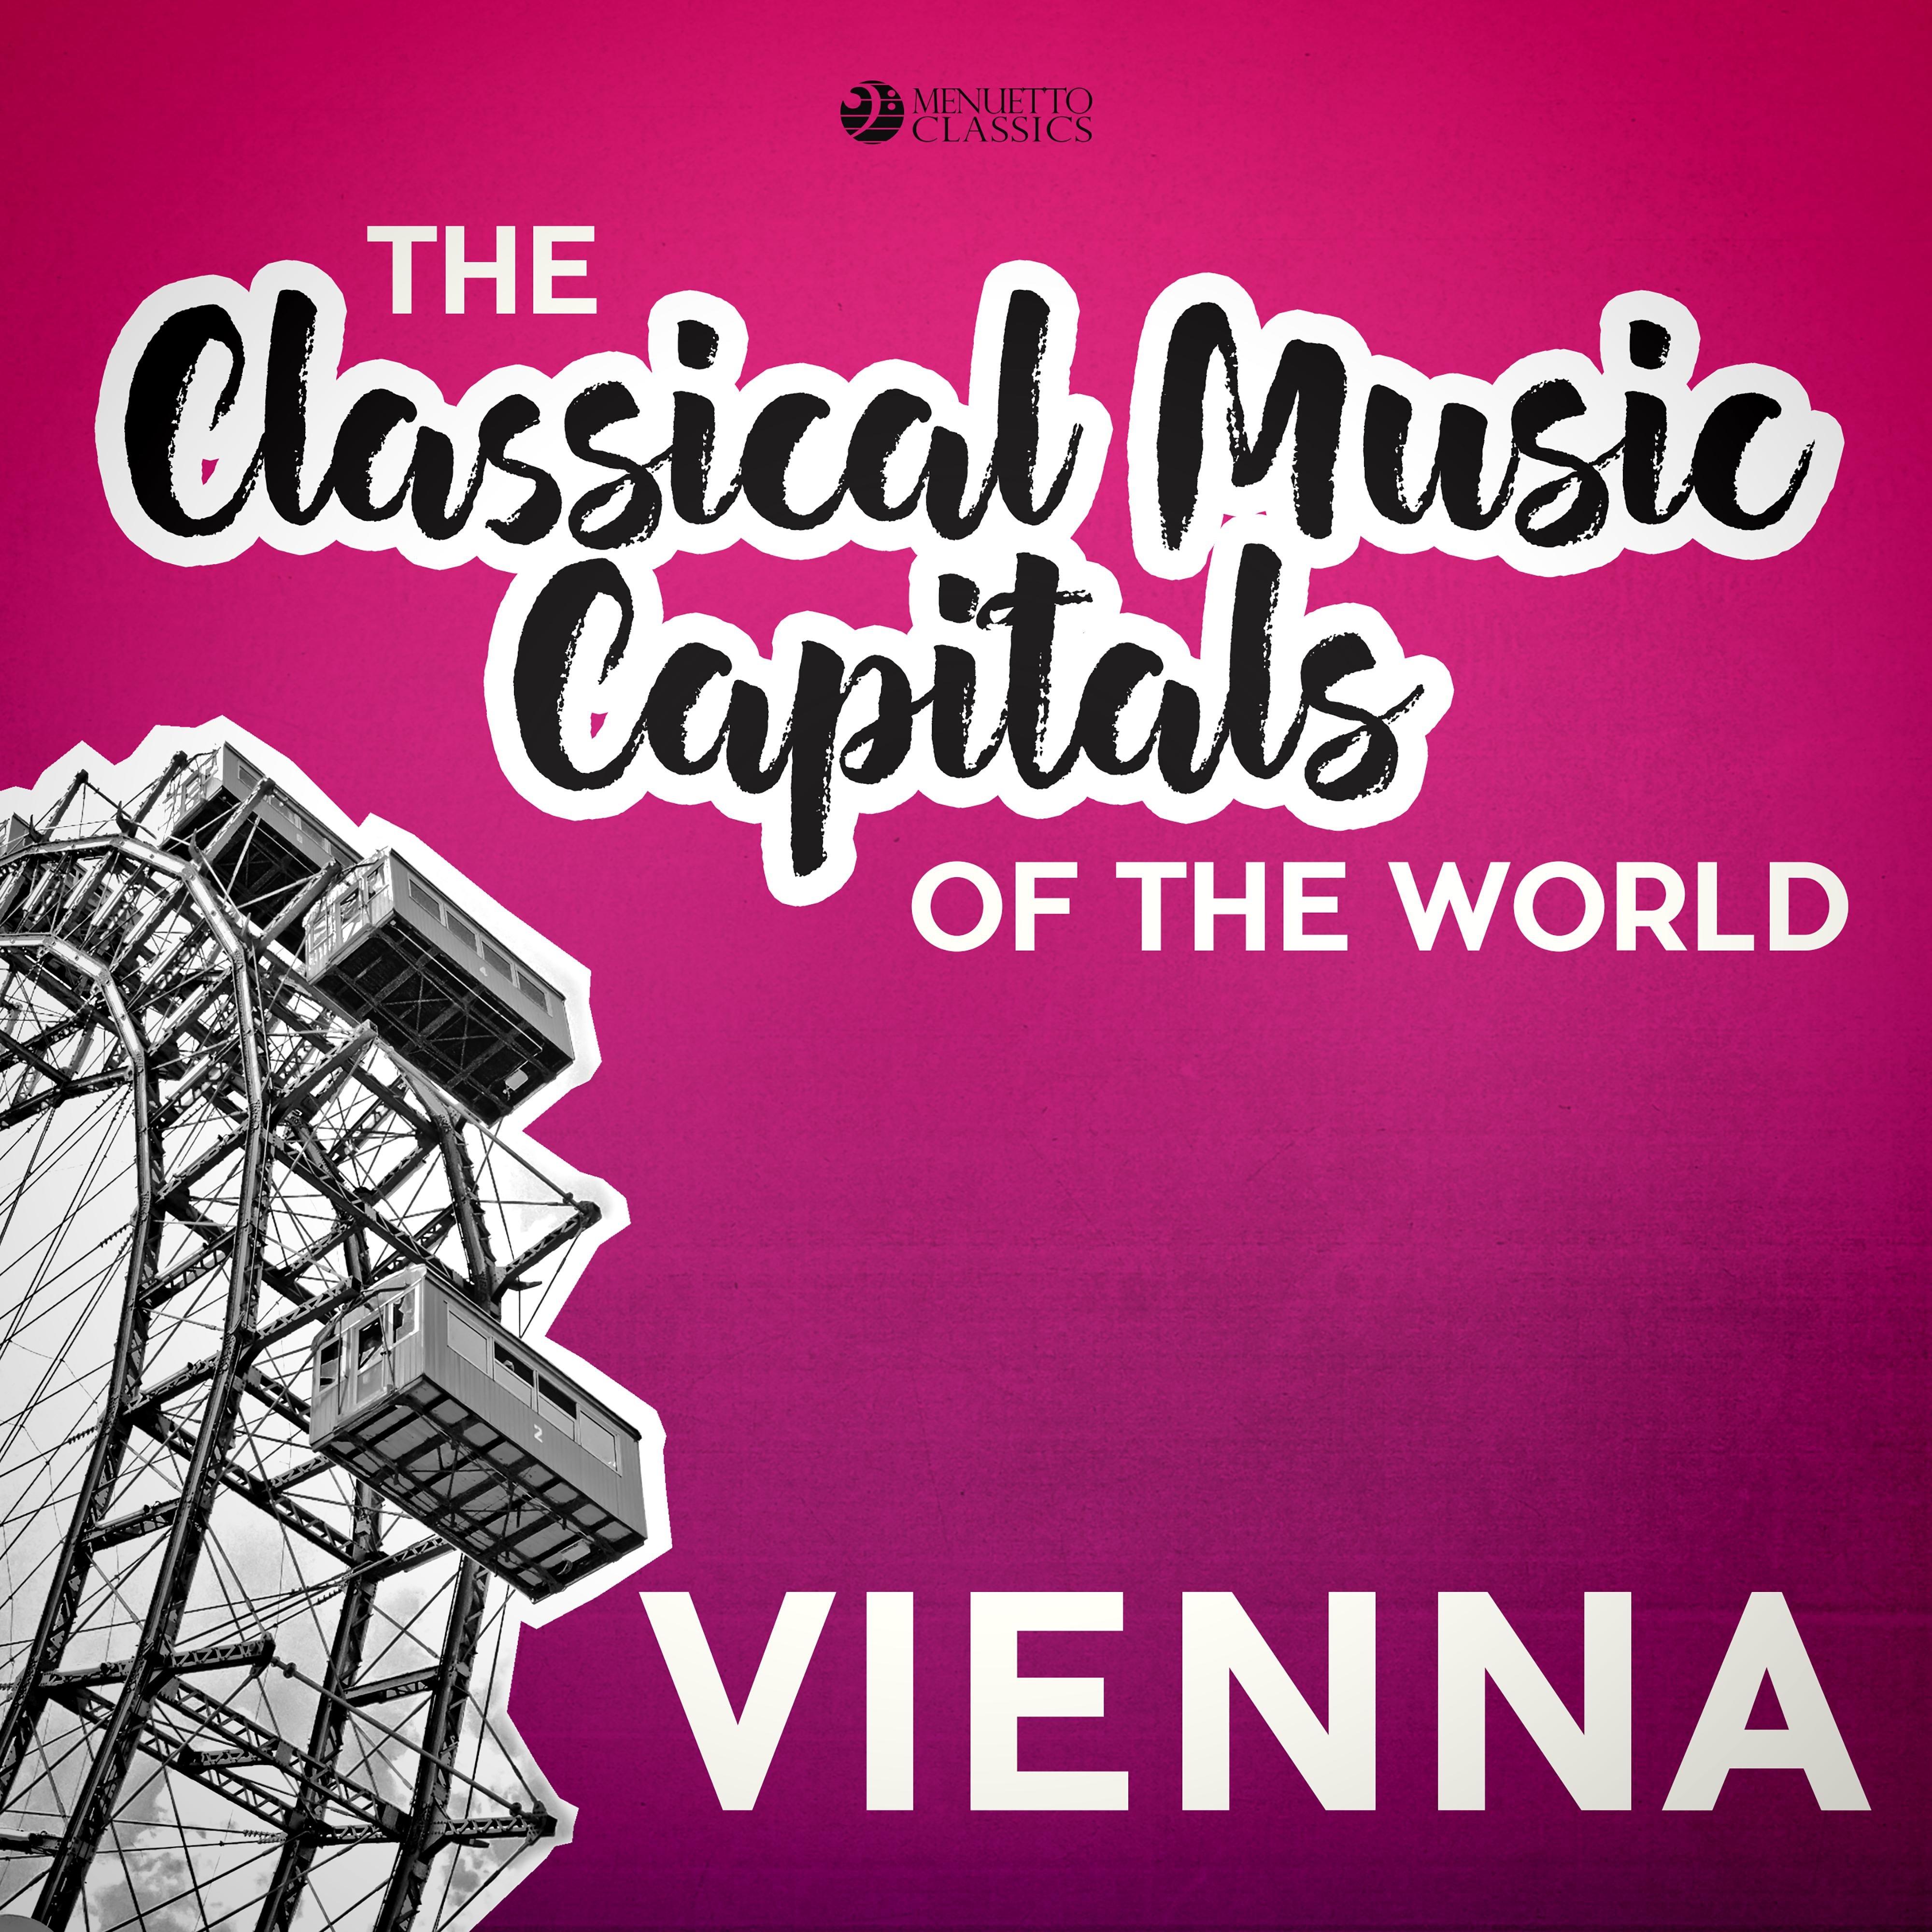 Cagliostro in Wien: I. Overture